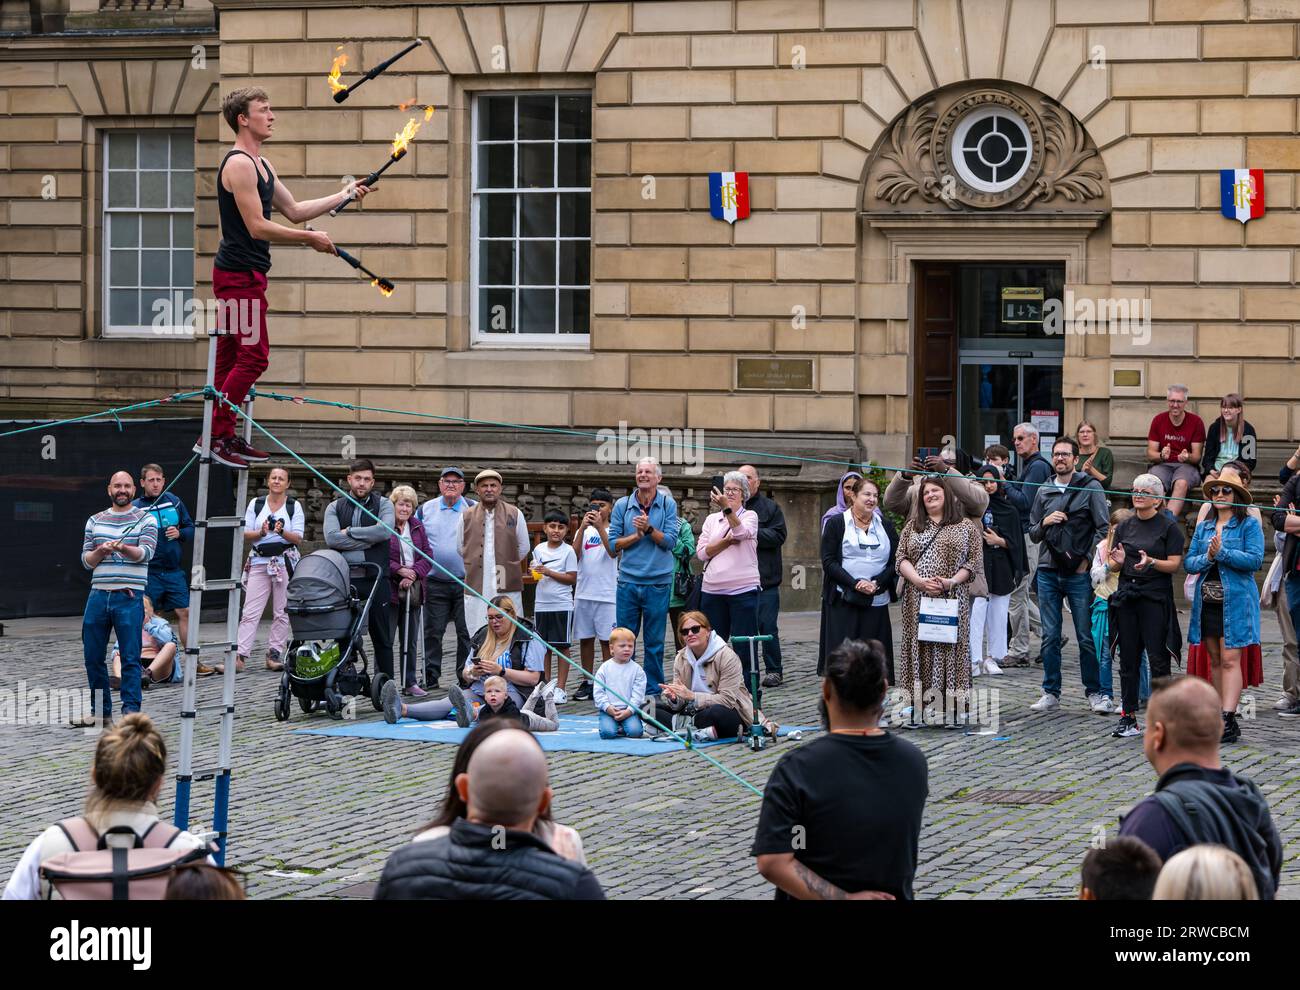 Straßenkünstler, der mit Feuerfackeln jongliert, während er auf einer Leiter steht, Edinburgh Festival Fringe, Parliament Square, Schottland, Großbritannien Stockfoto